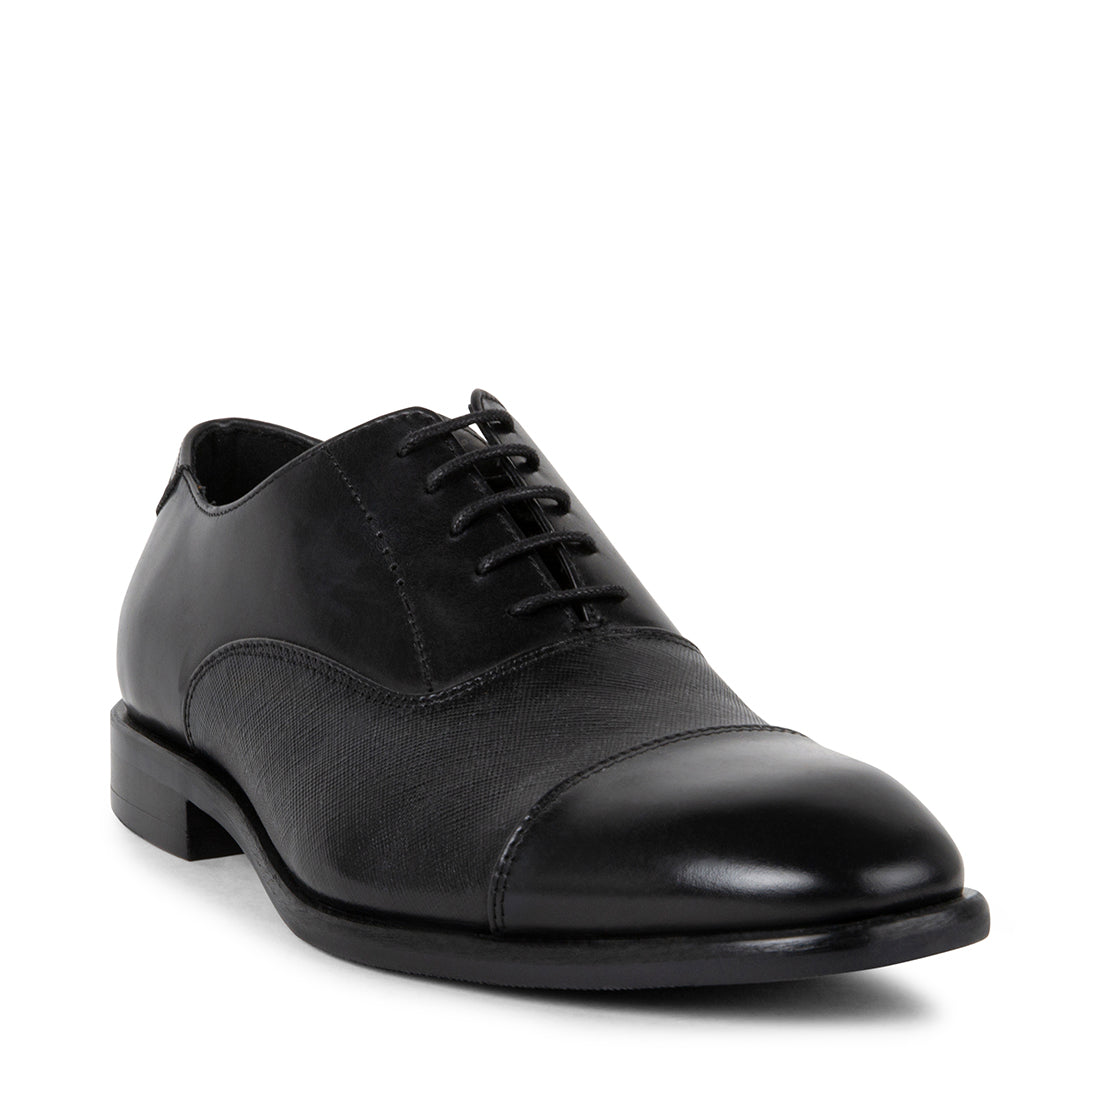 LUCE Black Leather Men's Dress Shoes | Men's Designer Dress Shoes ...